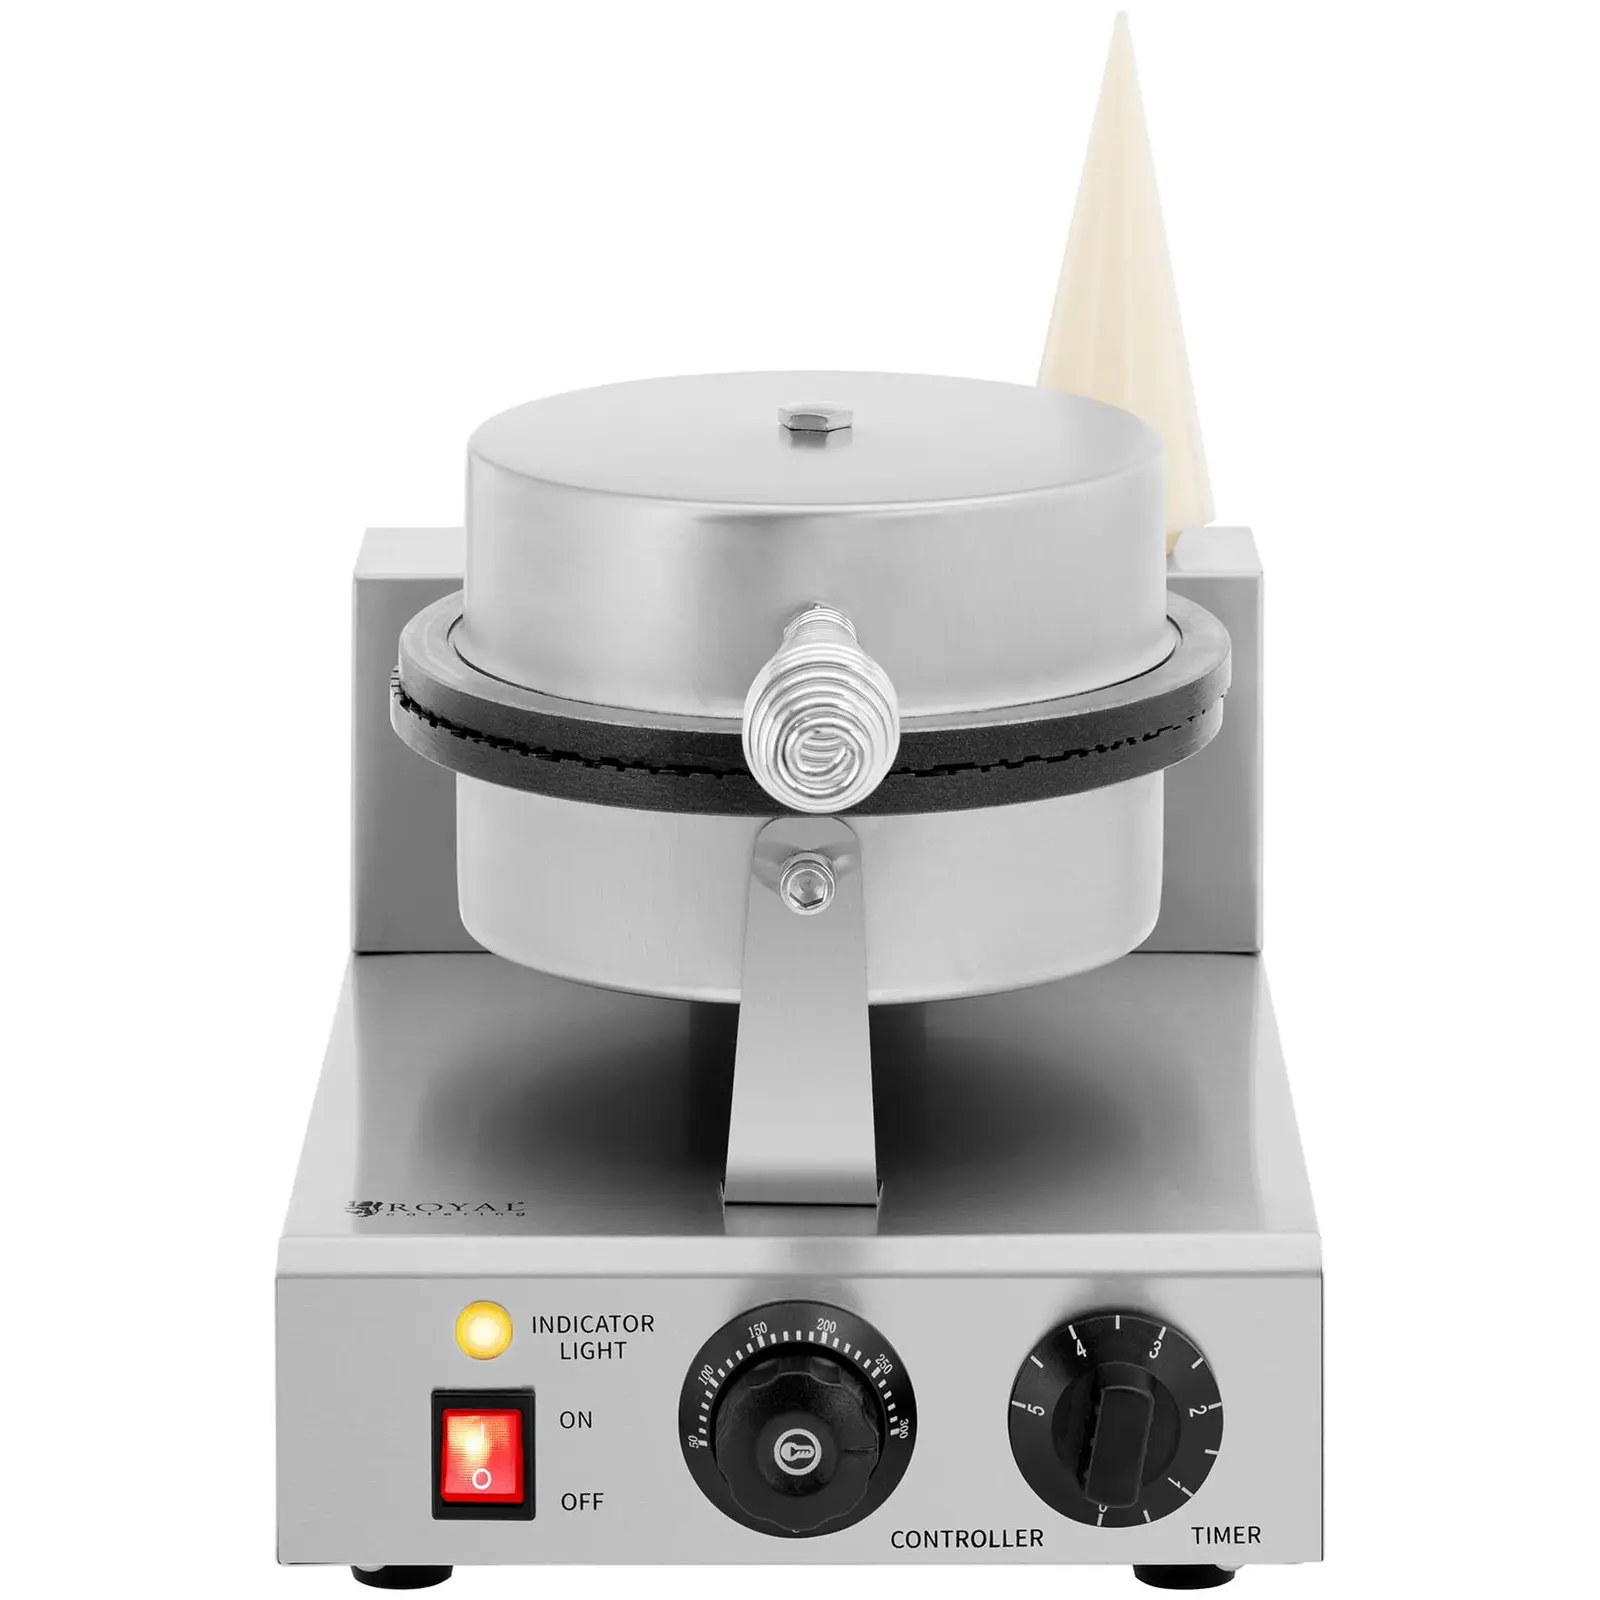 Piastra per waffel - Per coni gelato - 1.000 W - 0 - 5 min Timer - 50 - 300 °C - Royal Catering